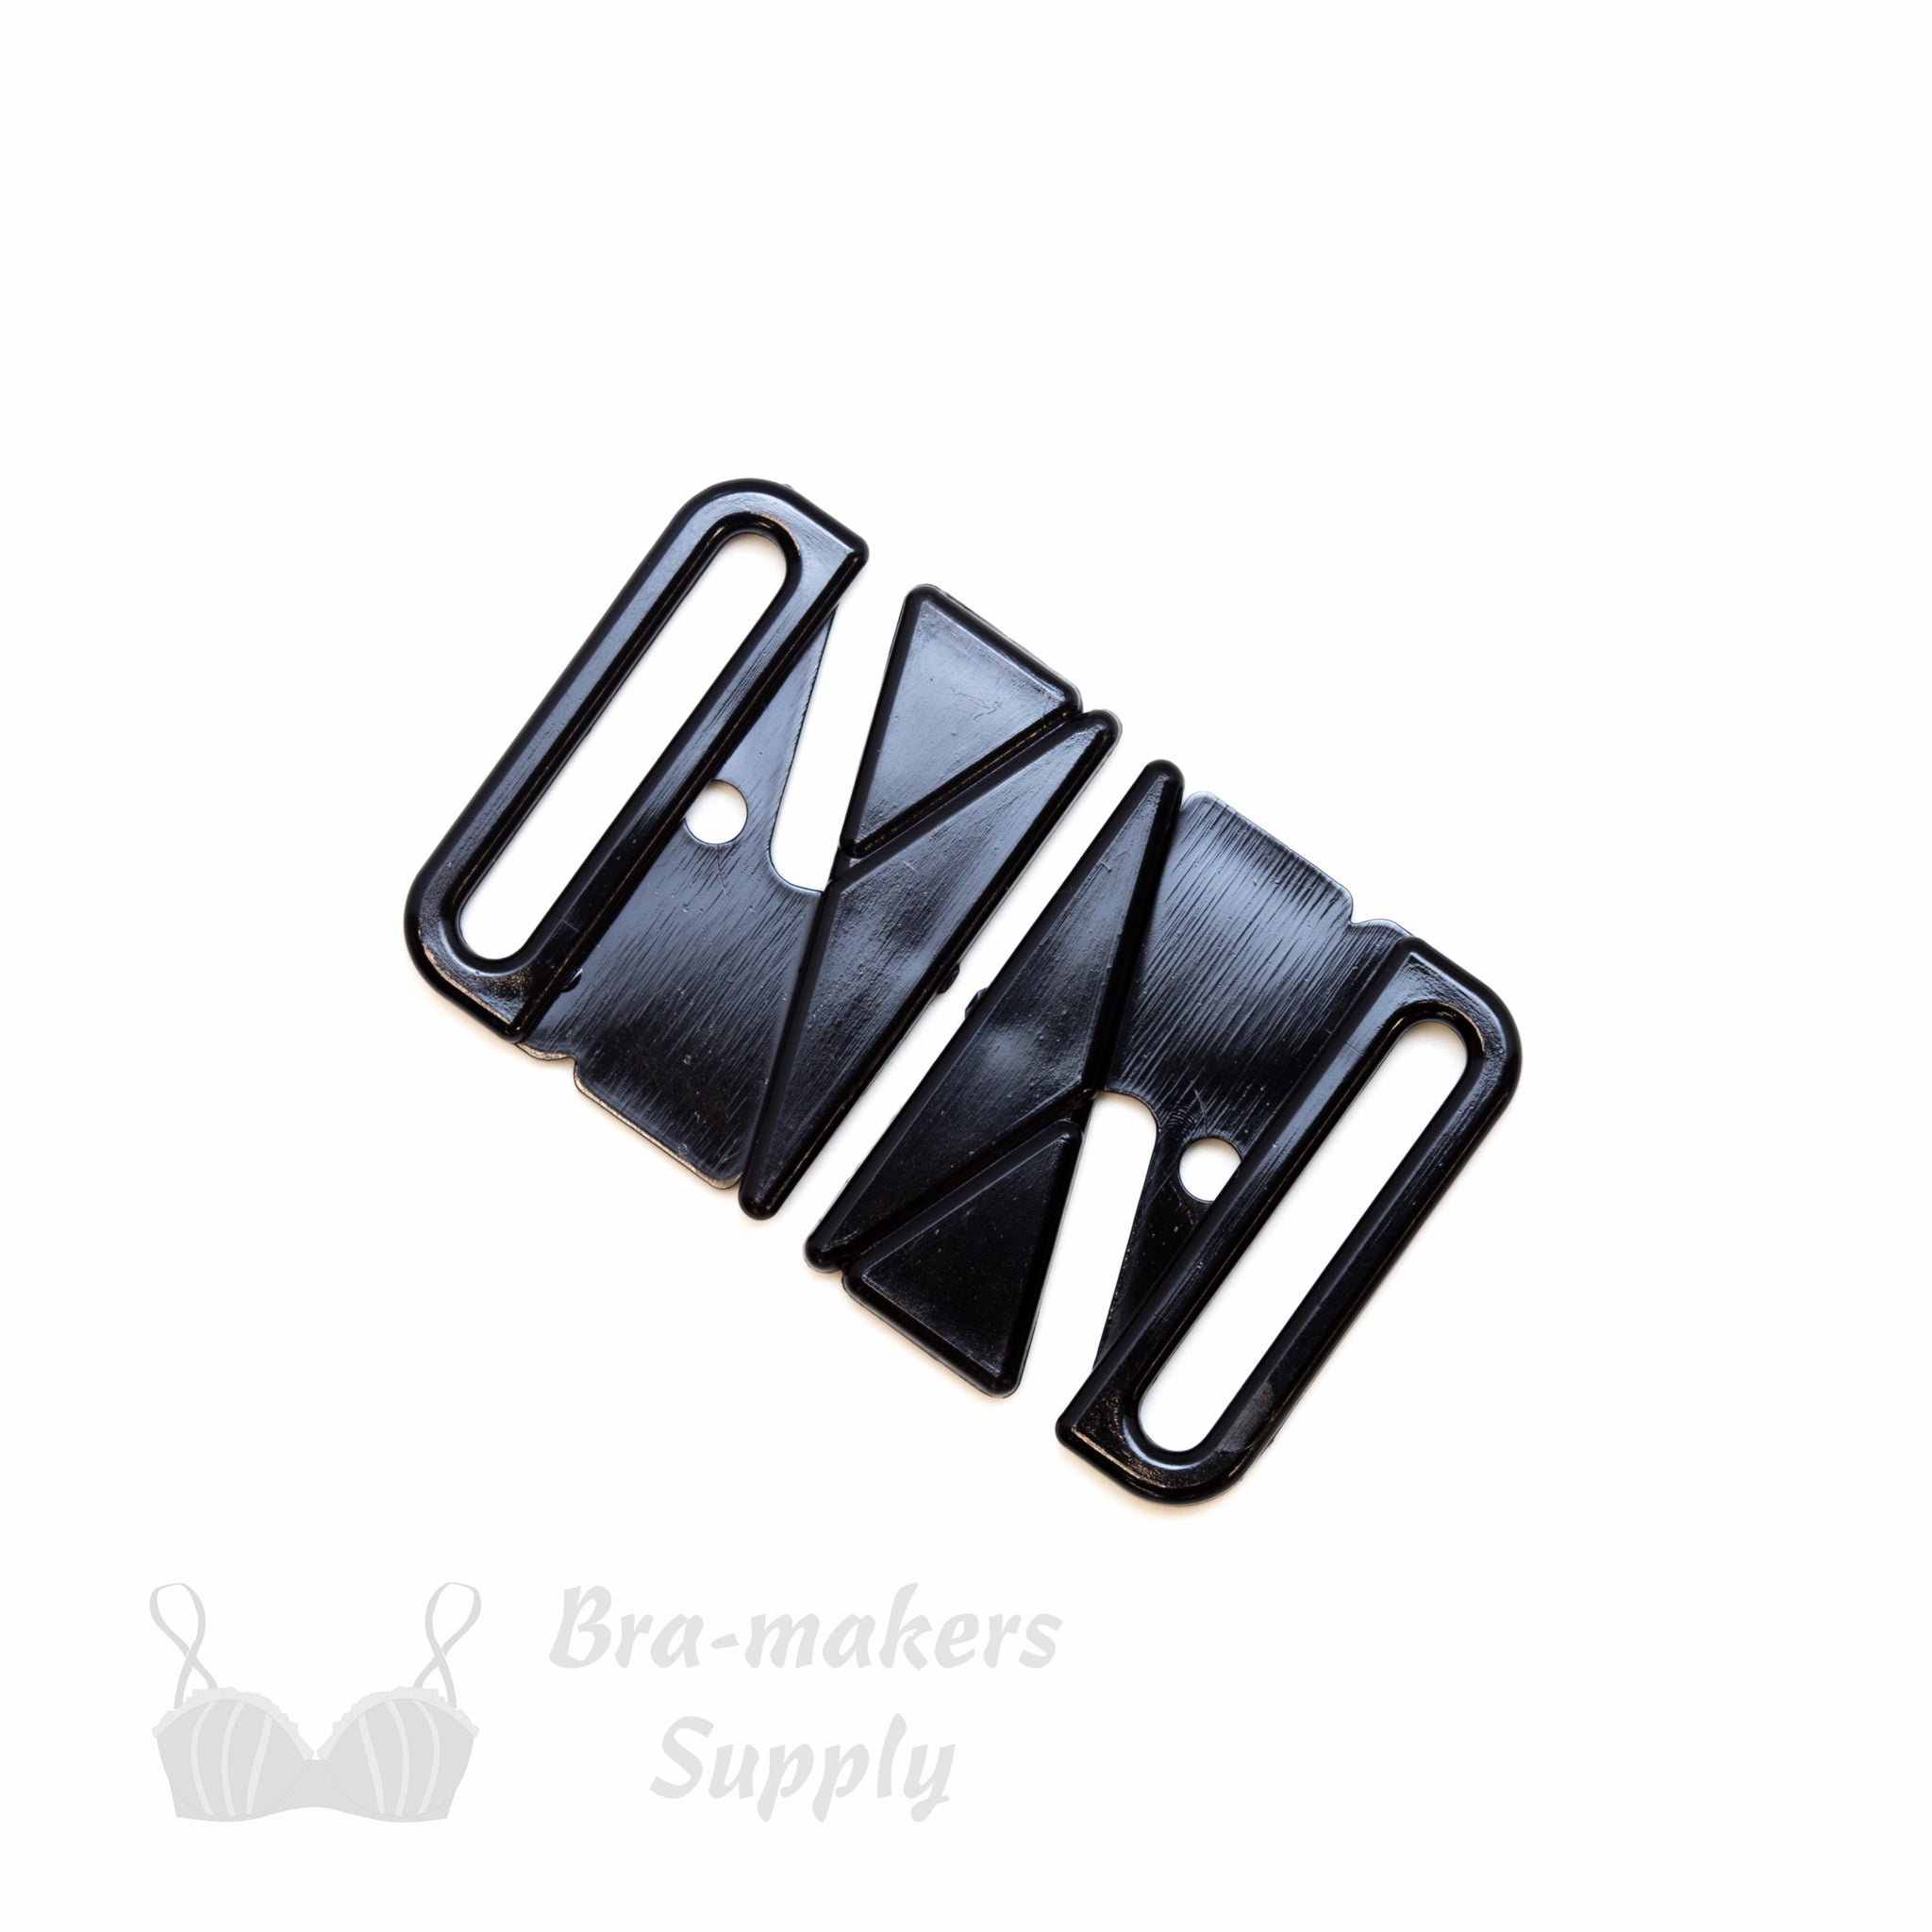  10pcs 20mm Black Plastic Buckles Front Closure Hook & Clasp  Fasteners Bikini Clasp Fasteners Bra Swimwear Clip